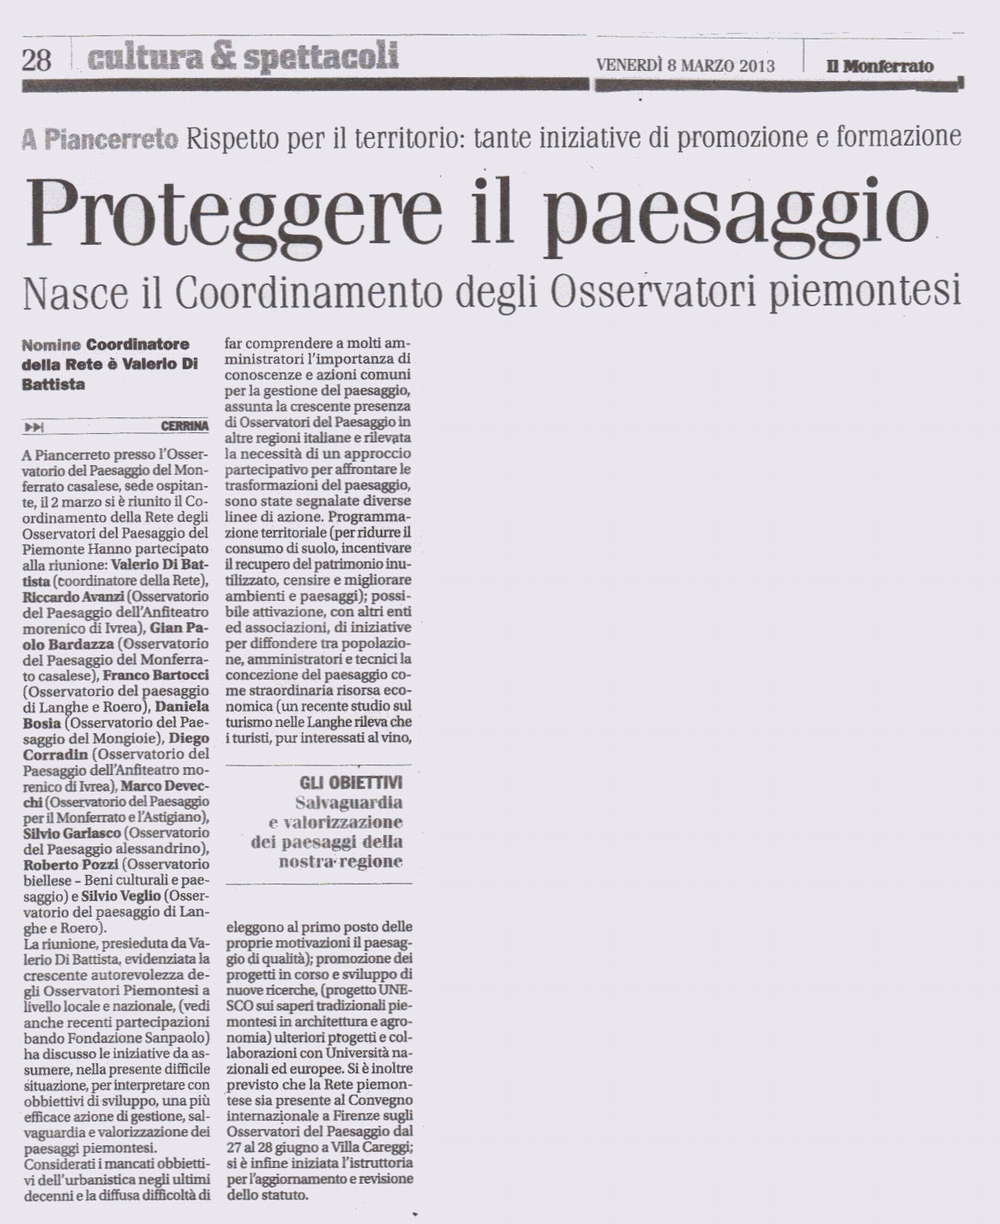 Il Monferrato (Venerdi 8 marzo 2013) - Rassegna stampa della della riunione di Coordinamento della Rete degli Osservatori del paesaggio del Piemonte (Piancerreto di  Cerrina Monferrato 23 02 13).